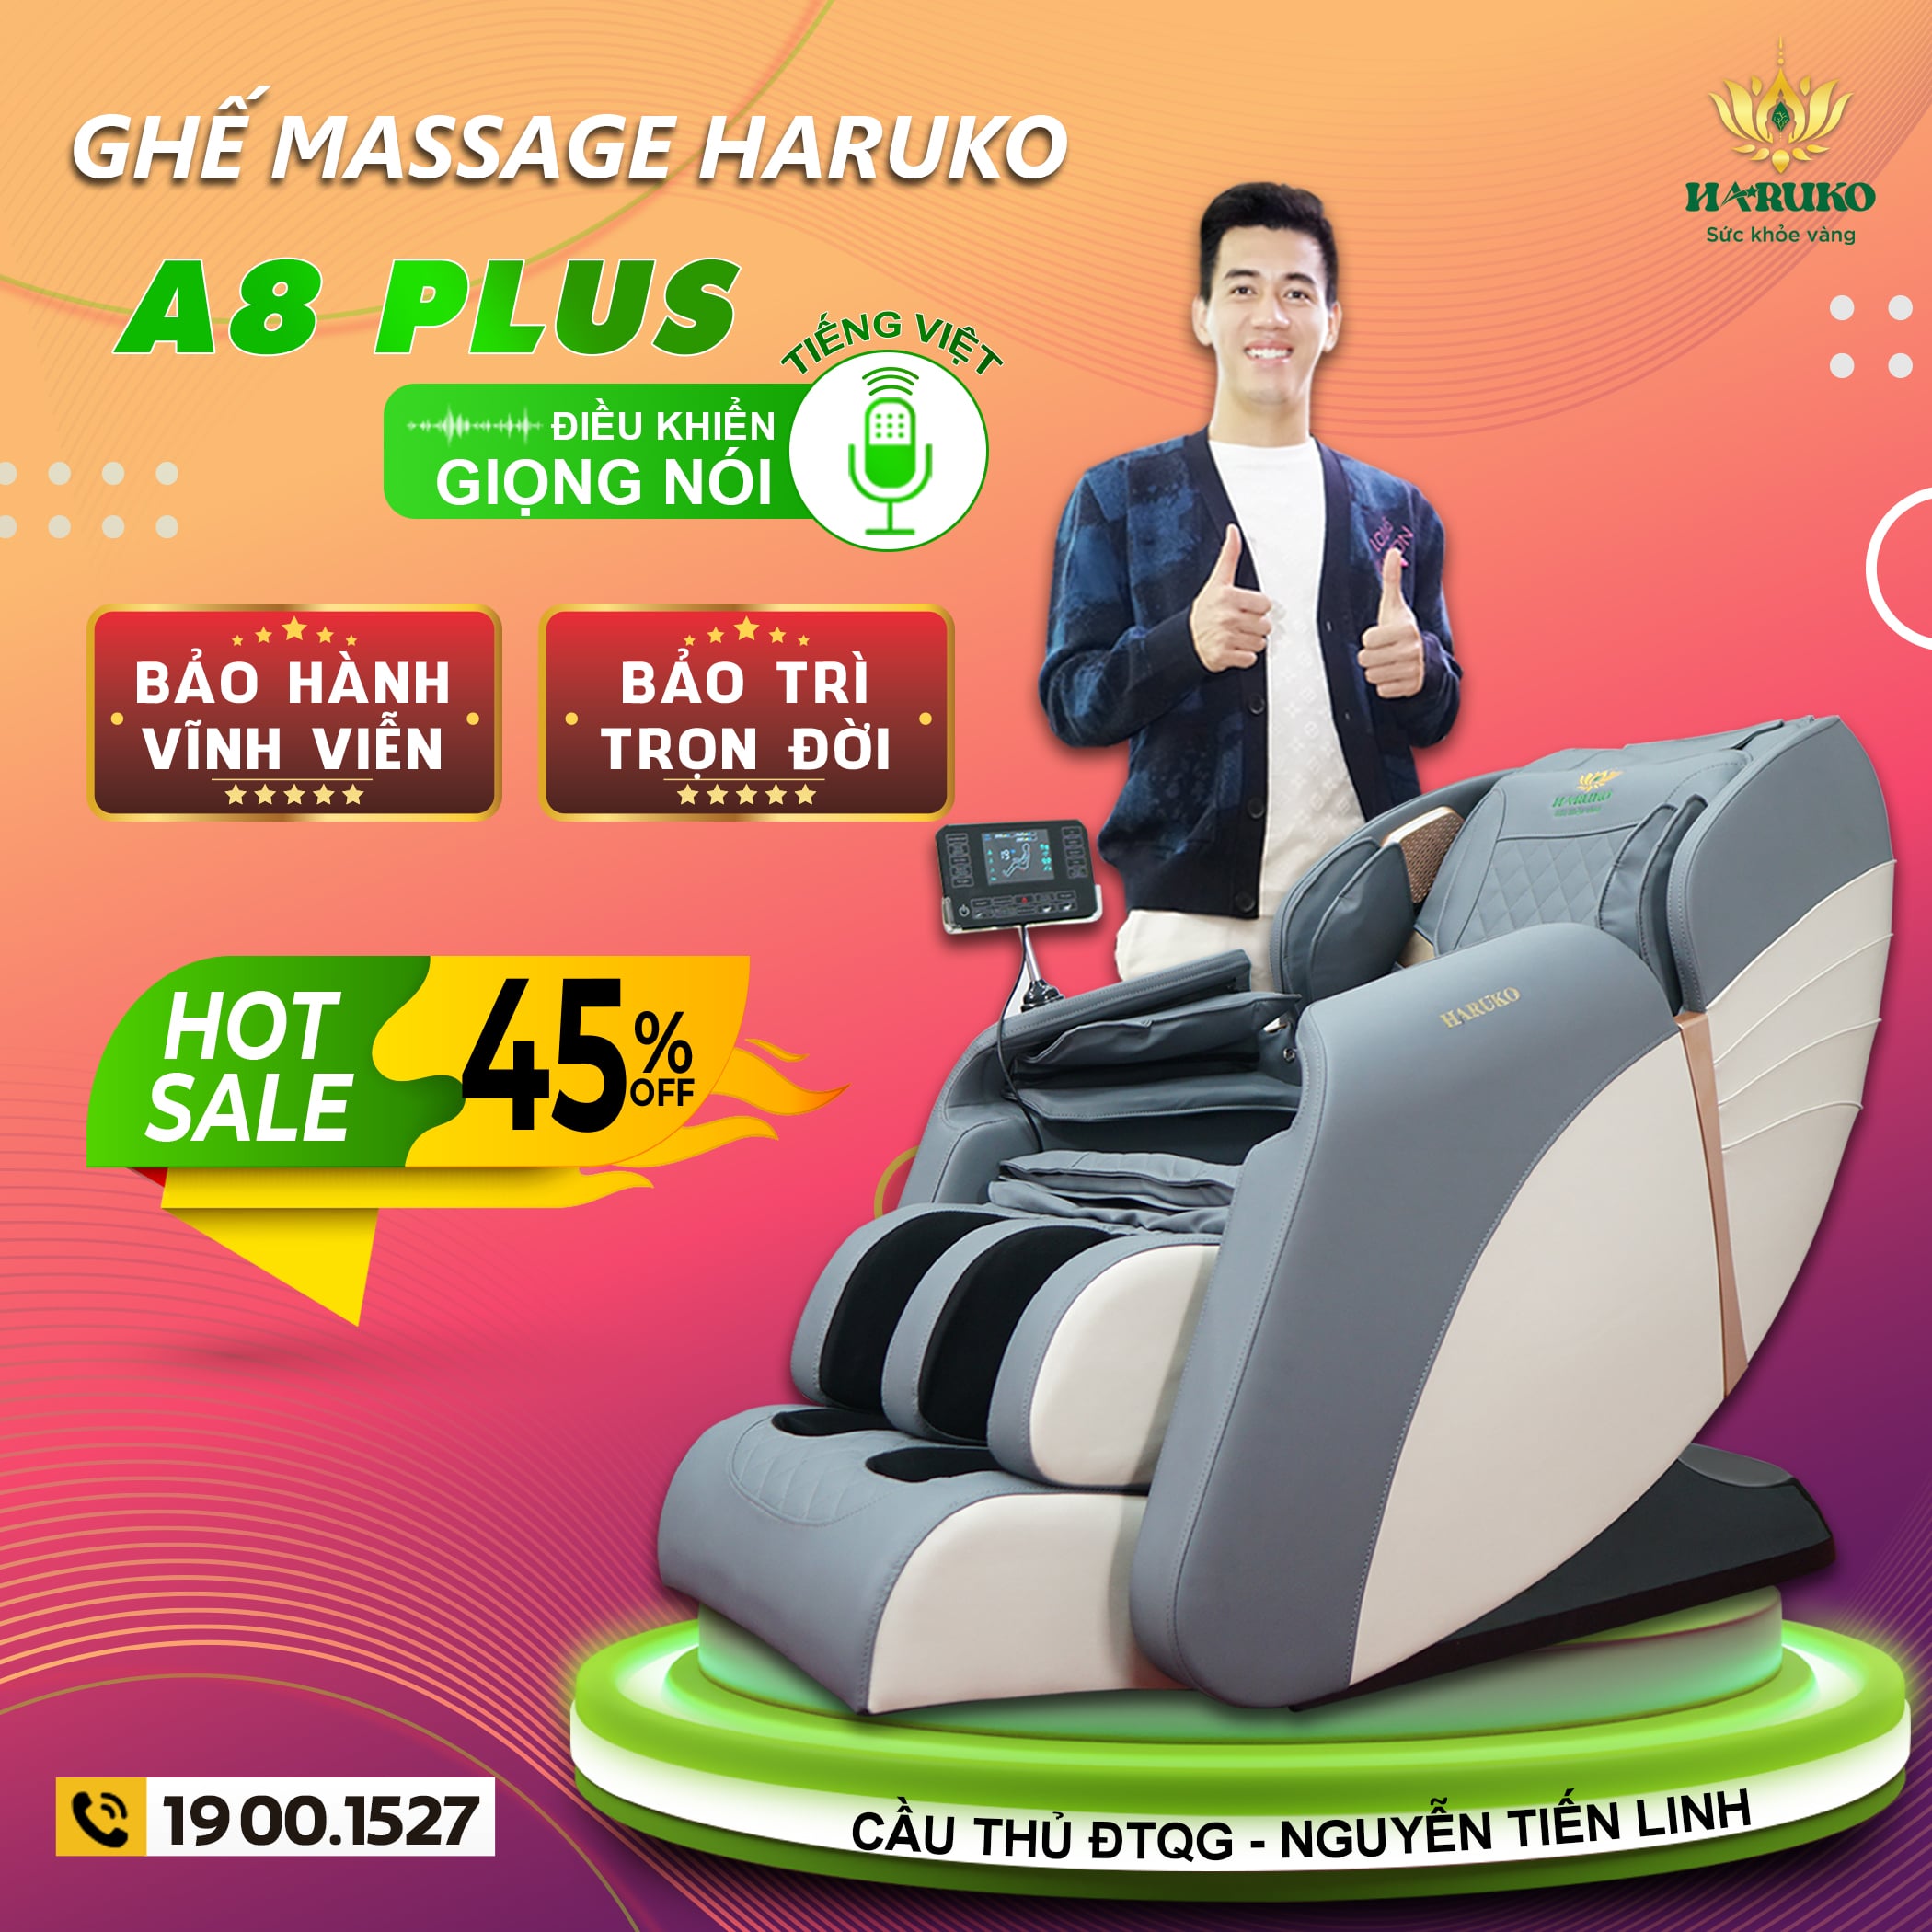 Haruko-A8 là mẫu ghế massage sở hữu nhiều tính năng ưu việt đón nhận được rất nhiều sự quan tầm kể từ ngày đầu ra mắt